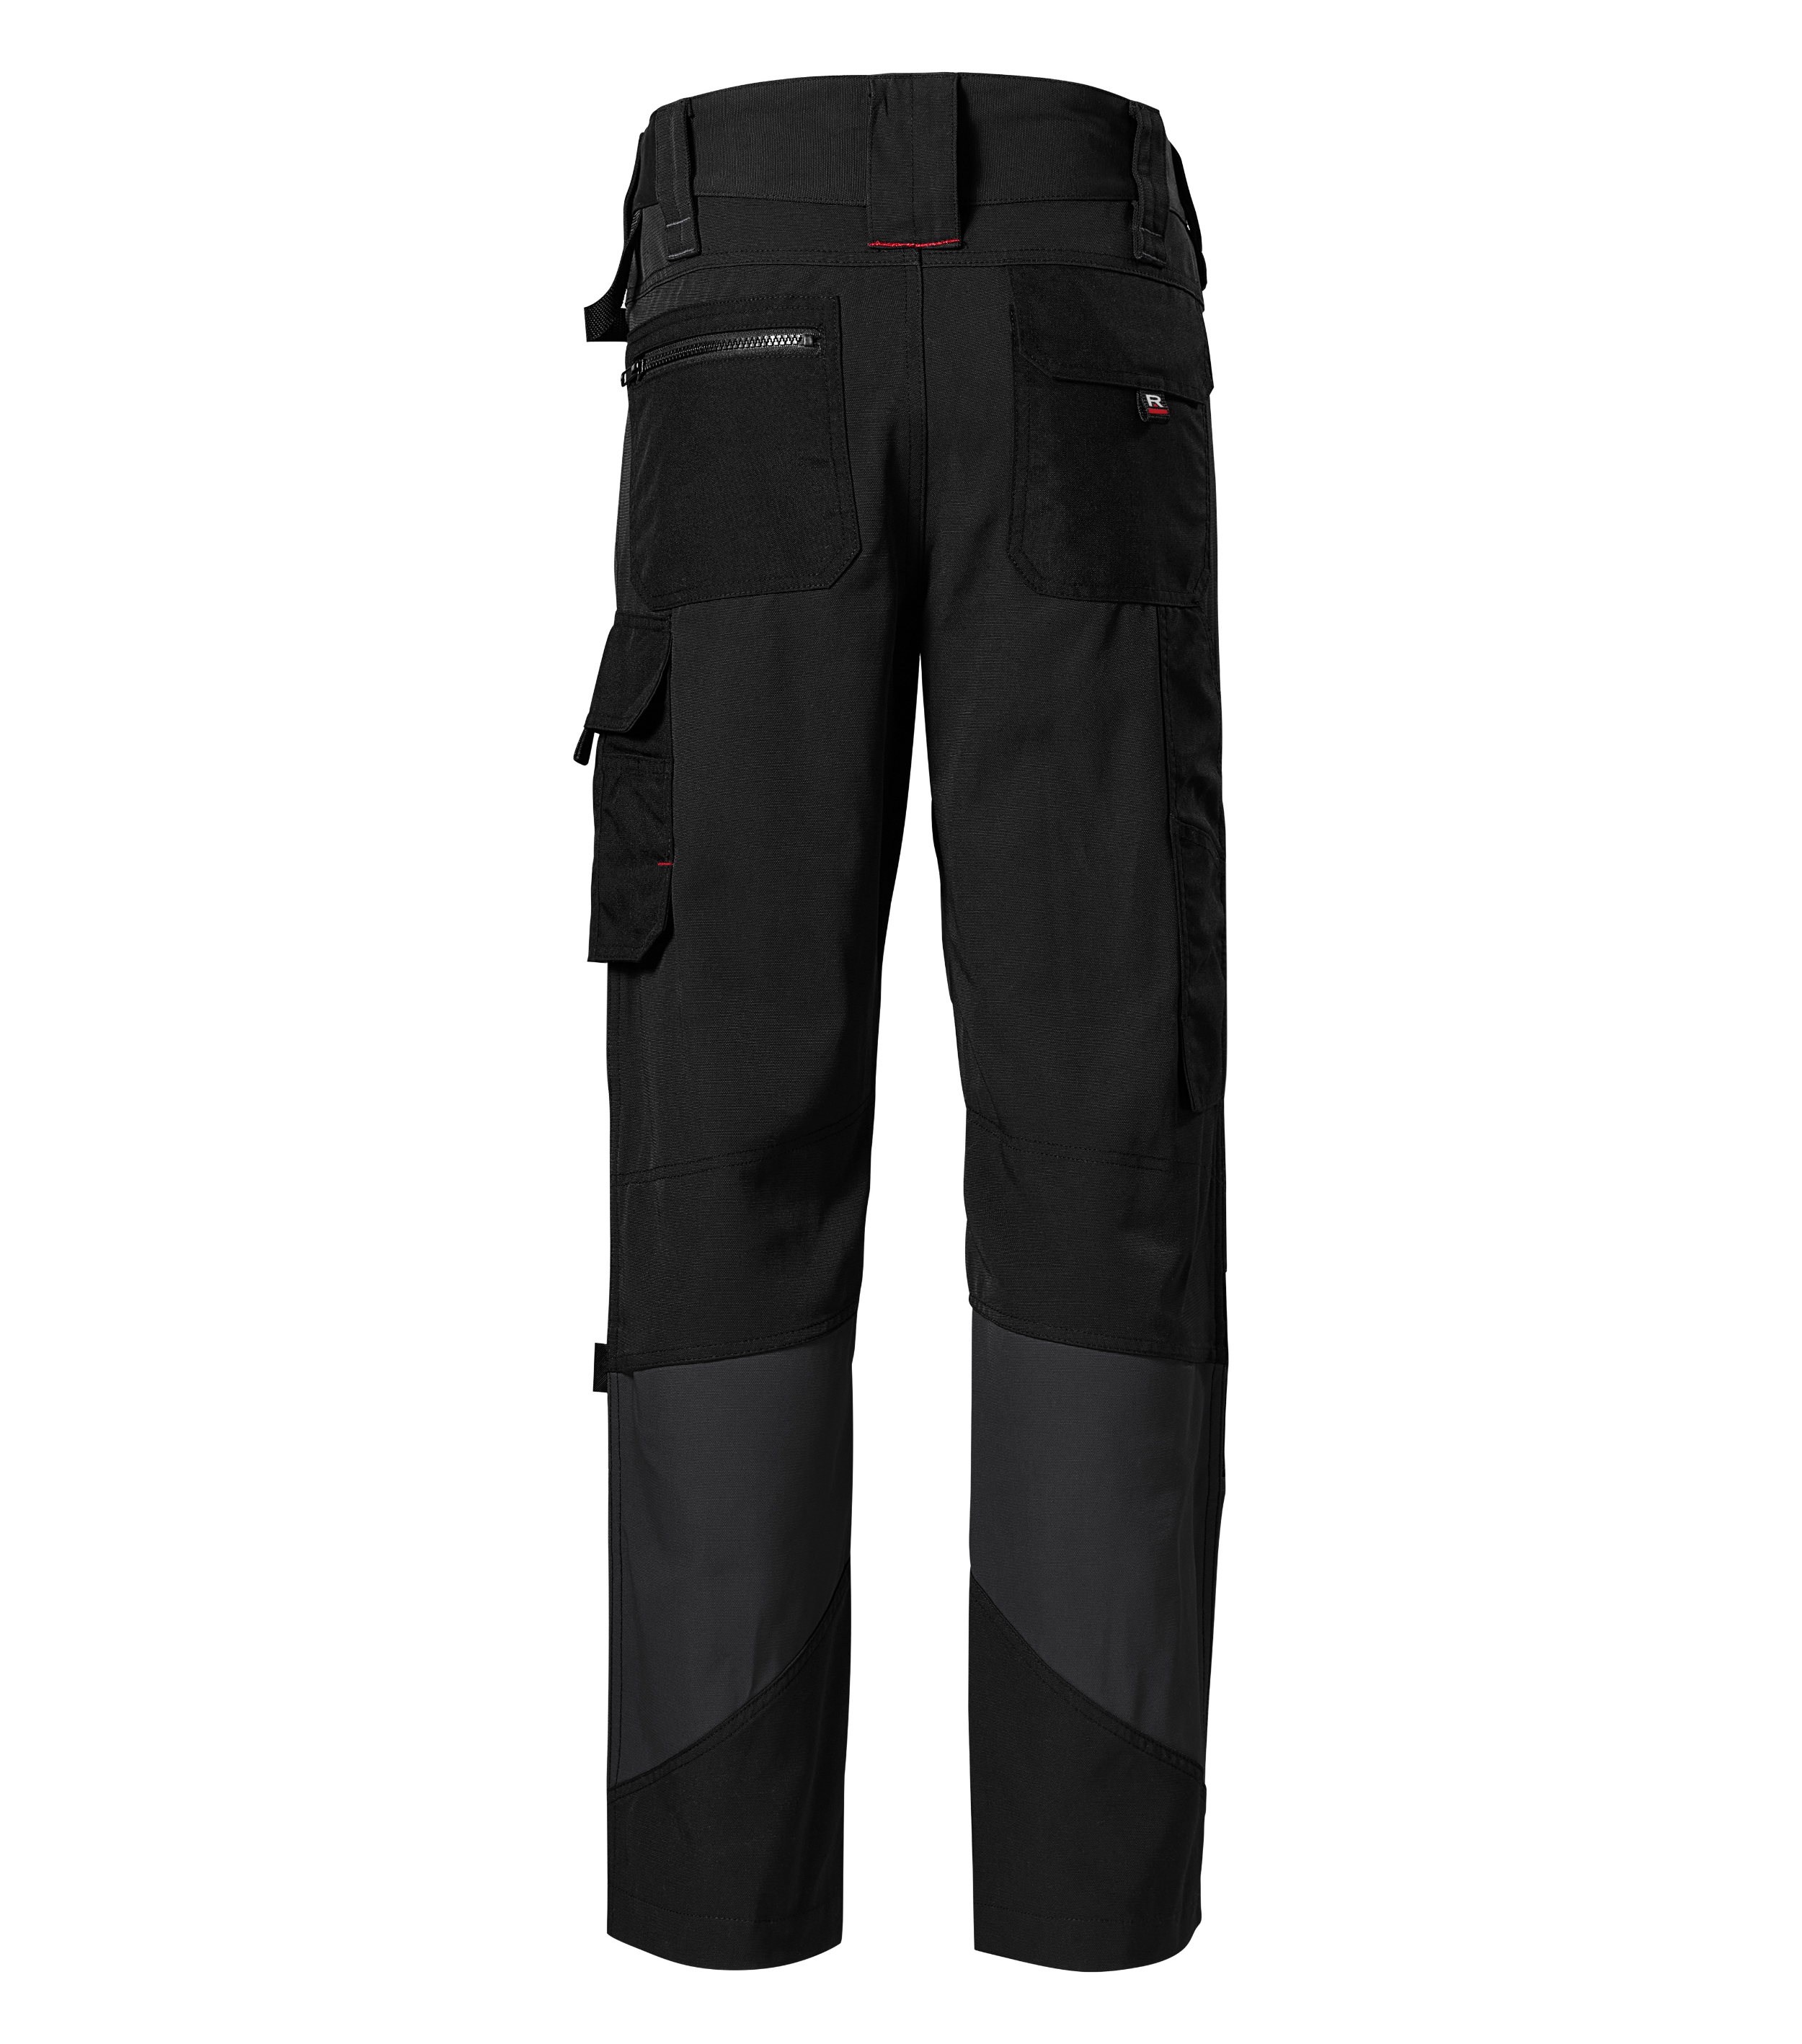 Arbeitshose Männer - VERTEX W07 - 10 multifunktionale Taschen, schmutzabweisende Ausrüstung und Kniepolstertaschen - Arbeitskleidung Herren auch als Gertenhose Herren 